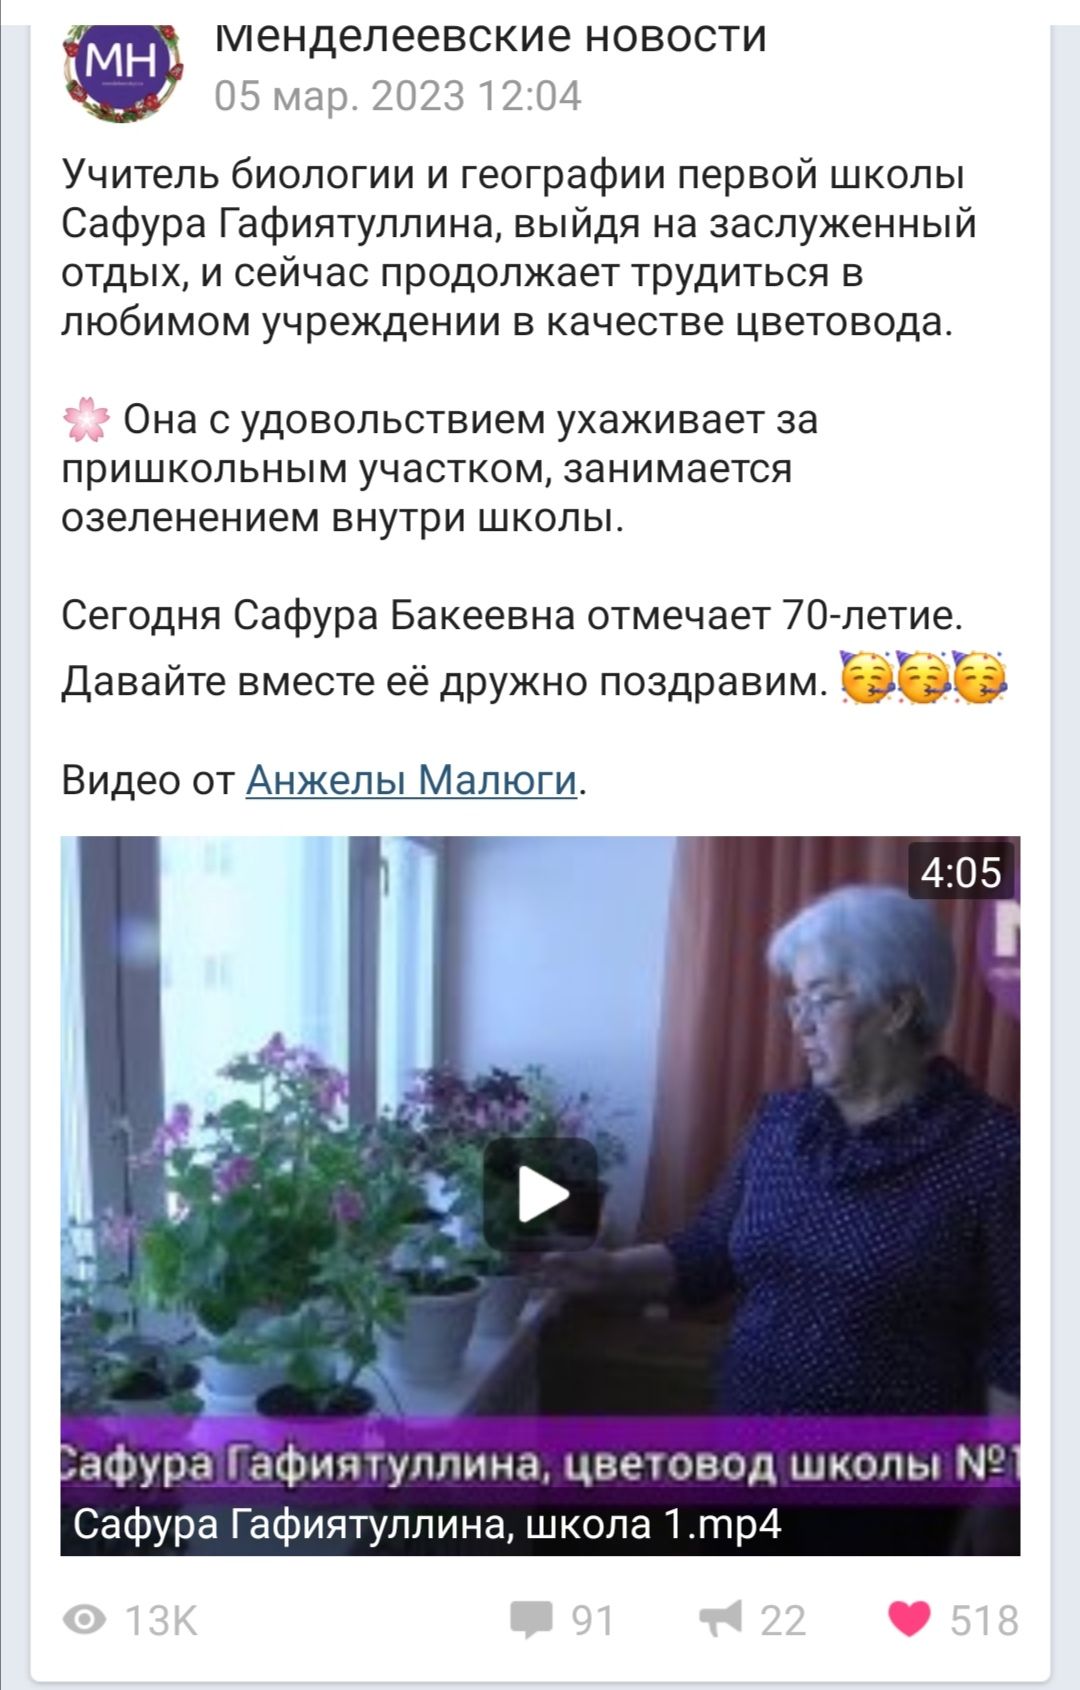 Видеоролик в «МН» об учителе биологии и географии школы №1 Сафуре Гафиятуллиной набрал более 13 000 просмотров